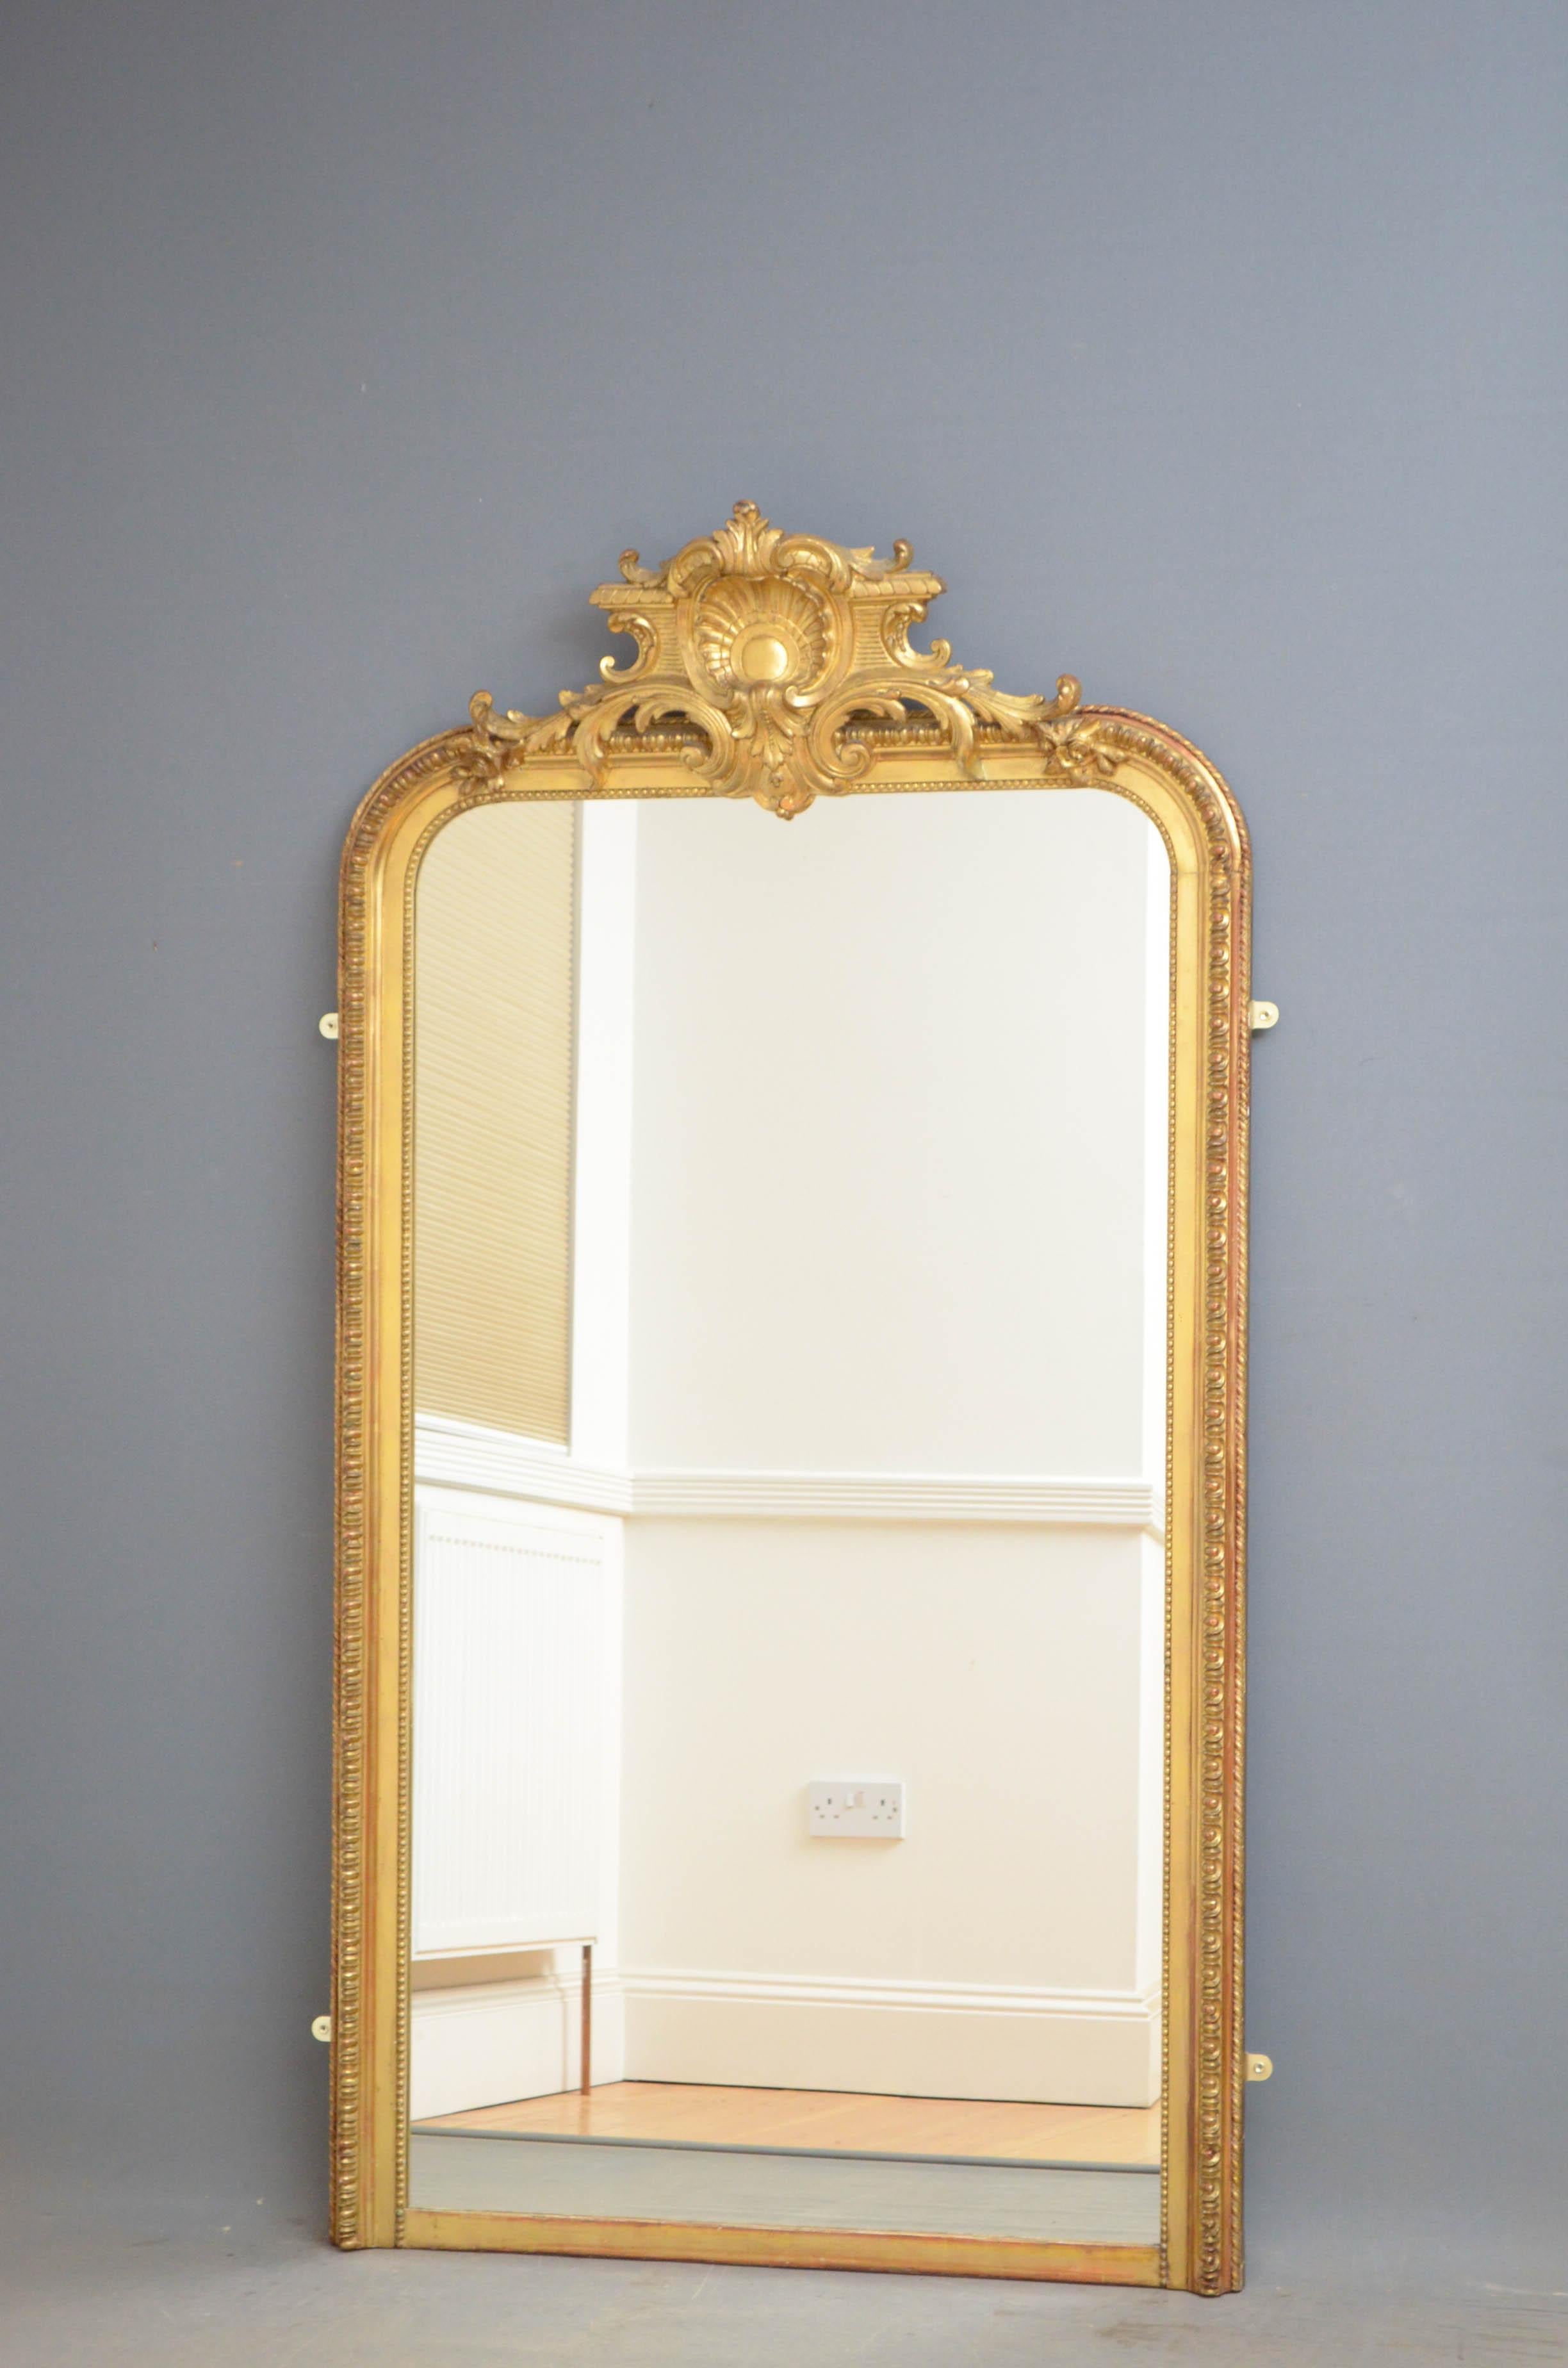 Sn4772 schlanker und hoher vergoldeter Spiegel aus dem 19. Jahrhundert mit Ersatzglas in einem wunderschön verzierten Rahmen mit Wappen in der Mitte, alles in fantastischem Zustand, um 1870
Maße: H69